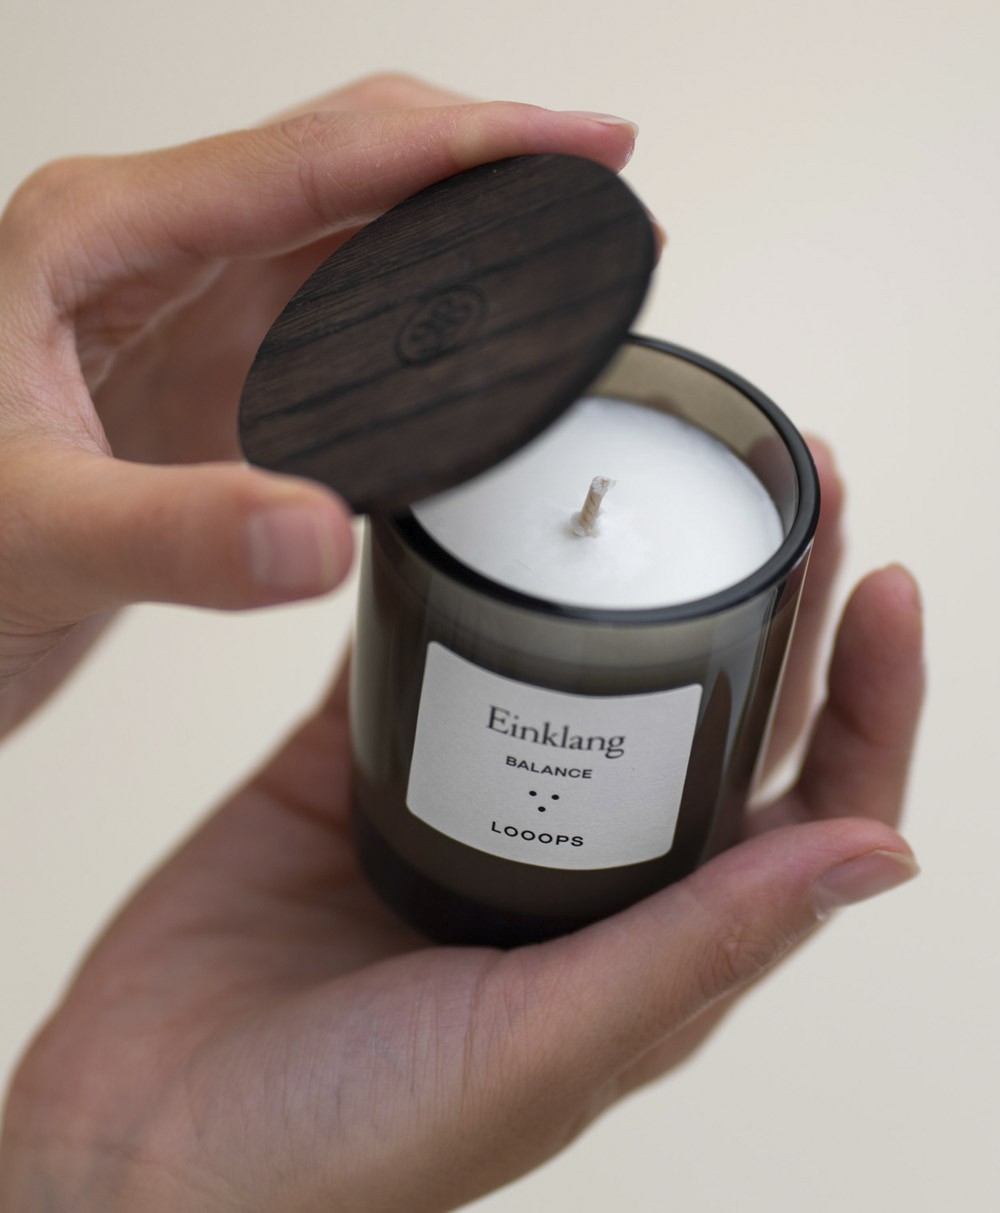 Looops Duftkerze von Looops Kerzen – concept RAUM bestellen im online store